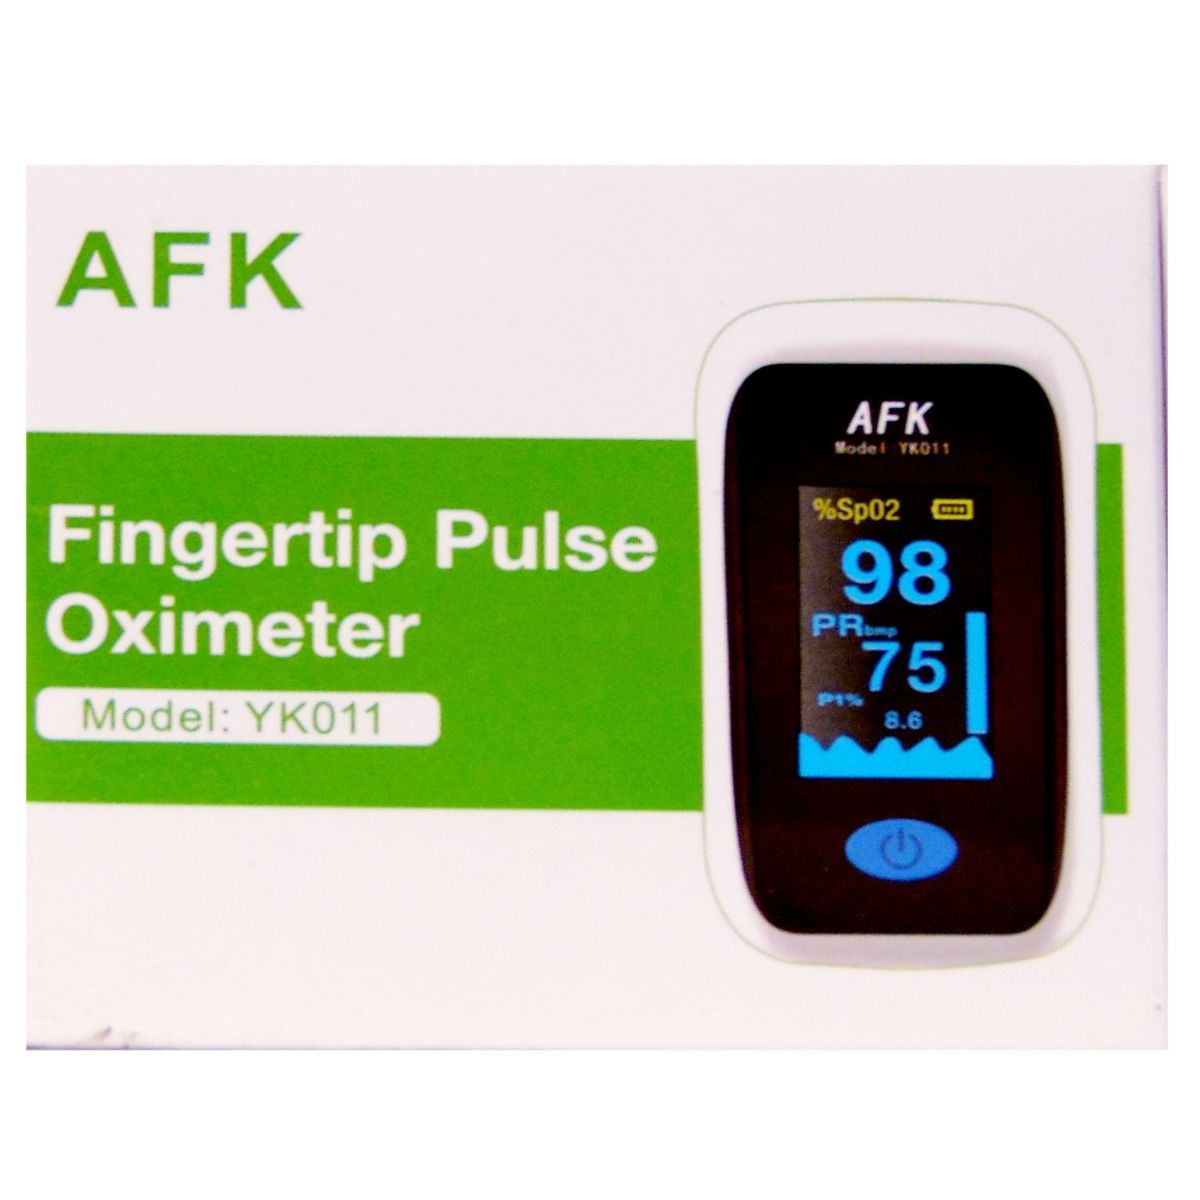 Buy Afk Fingertip Pulse Oximeter YK011 Online